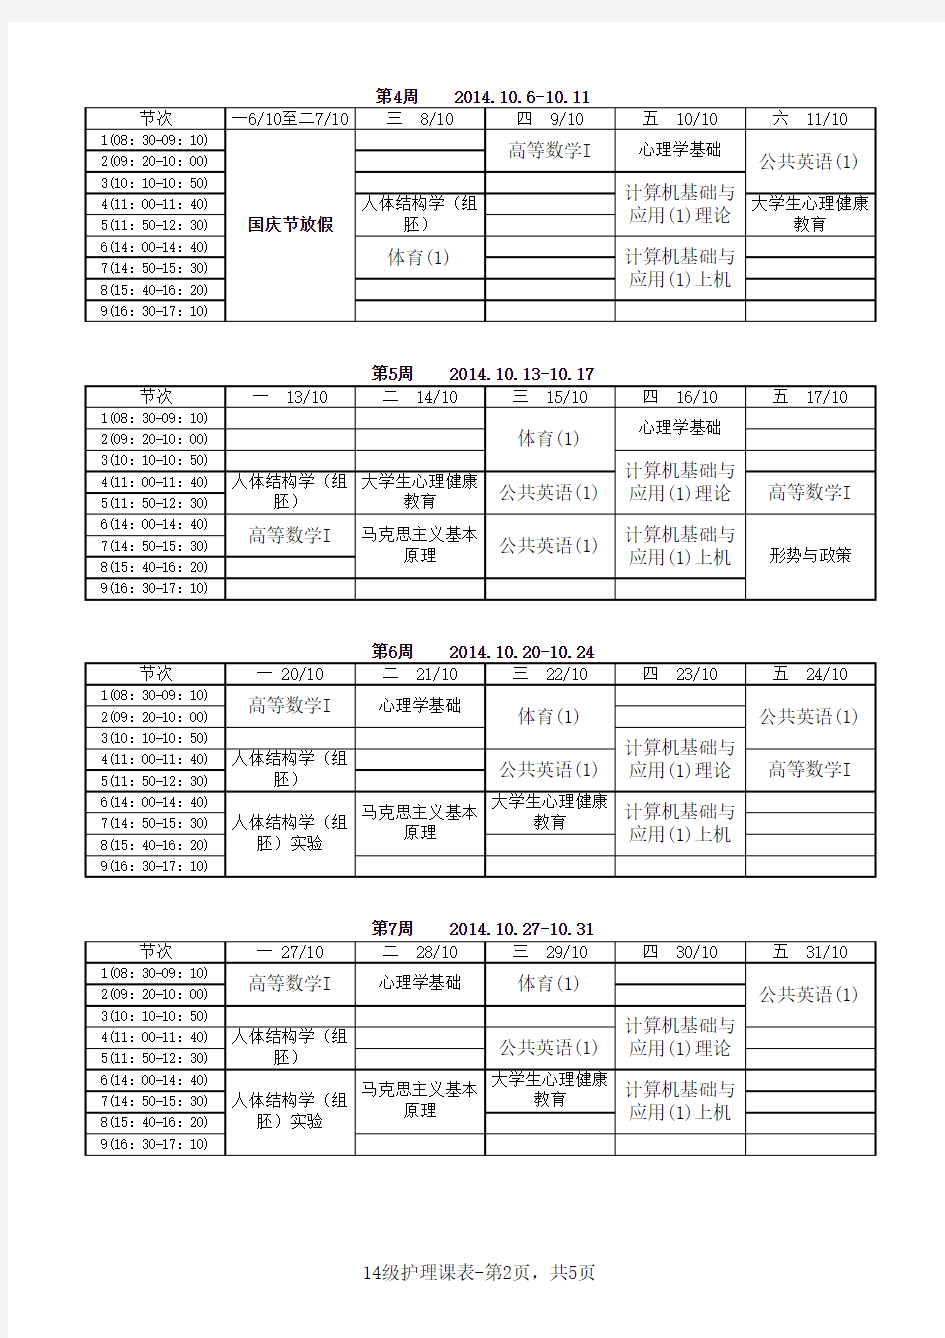 广州医科大学2014-2015-1学期2014级护理学专业本科课程表